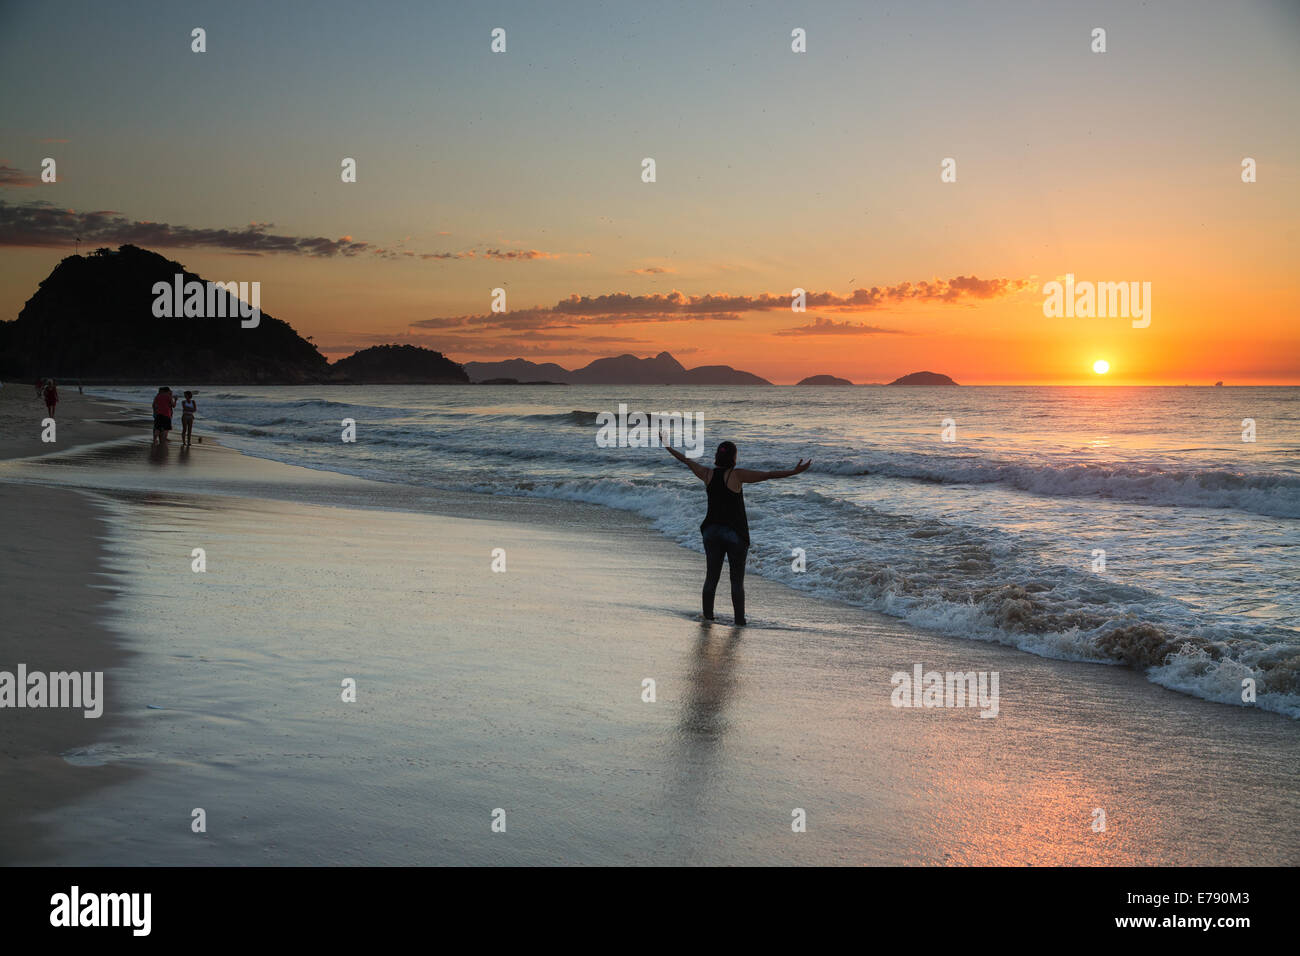 La plage de Copacabana, au lever du soleil, Rio de Janeiro, Brésil Banque D'Images